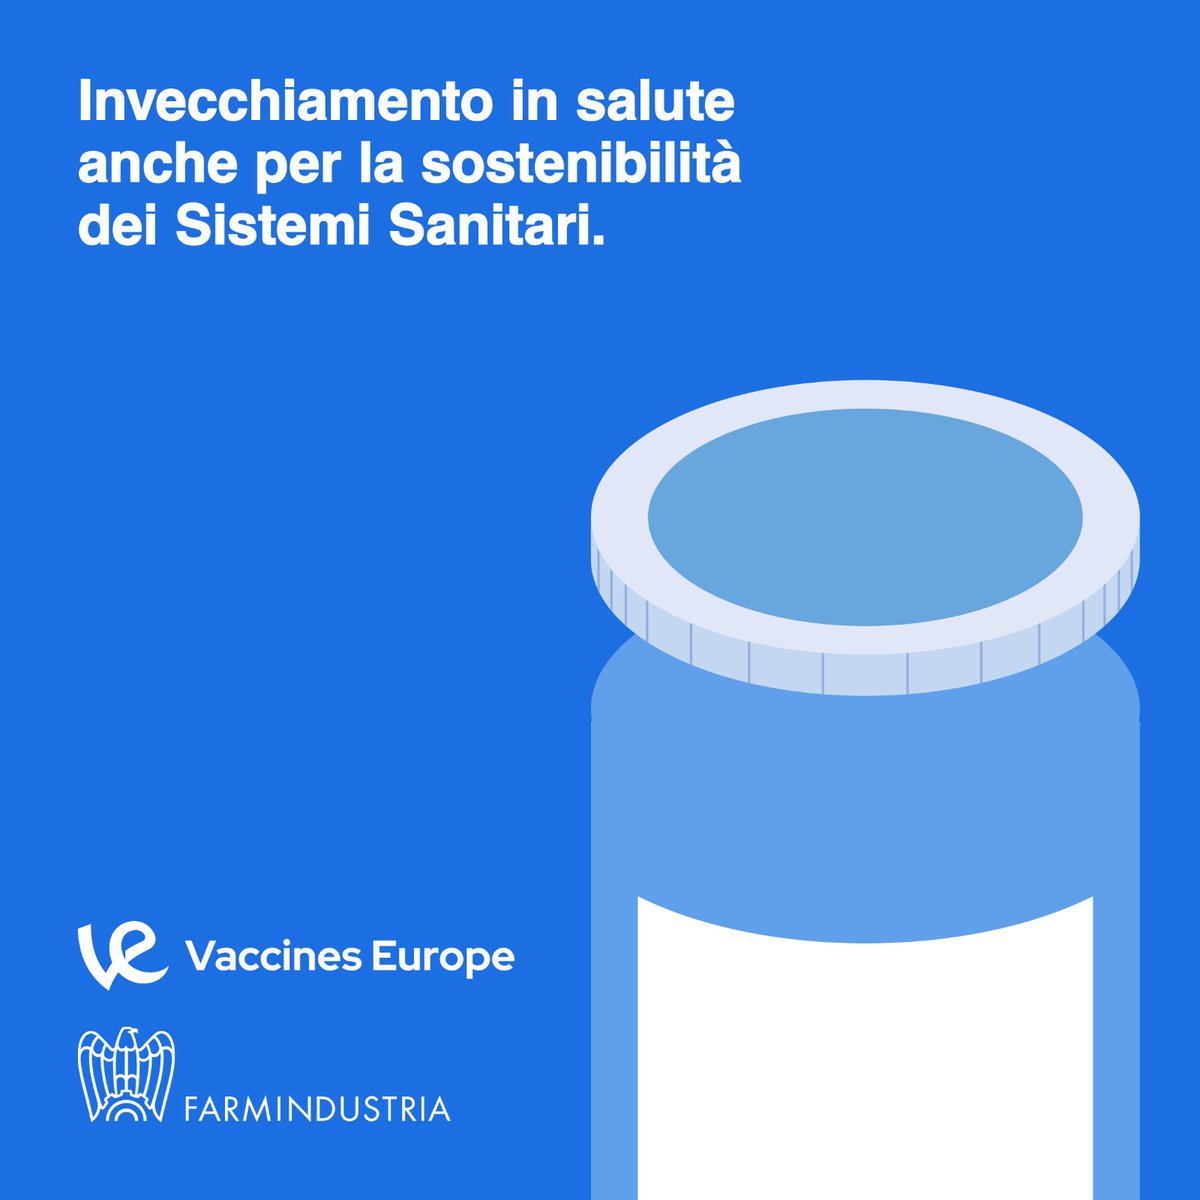 Entro il 2025, gli over 50 saranno il 50% della popolazione europea. La vaccinazione è un investimento, perché contribuisce a un invecchiamento in salute. In Italia, ogni euro speso per la vaccinazione degli adulti genera un risparmio di 16 euro. @VaccinesEurope Scopri di più: